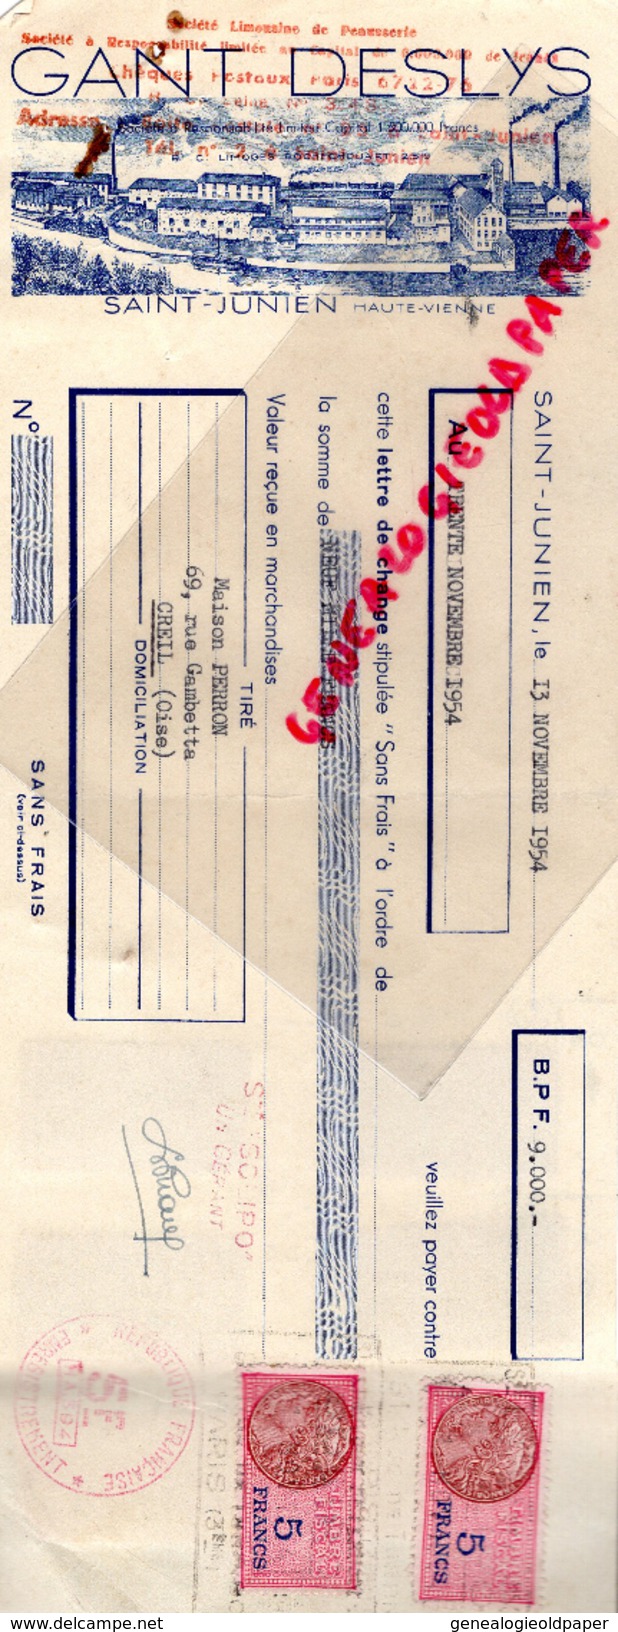 87 - ST SAINT JUNIEN - TRAITE GANTERIE GANT DESLYS- MAISON PERRON CREIL- GANTS- MEGISSERIE- 1954 MEGISSERIE - Elektrizität & Gas